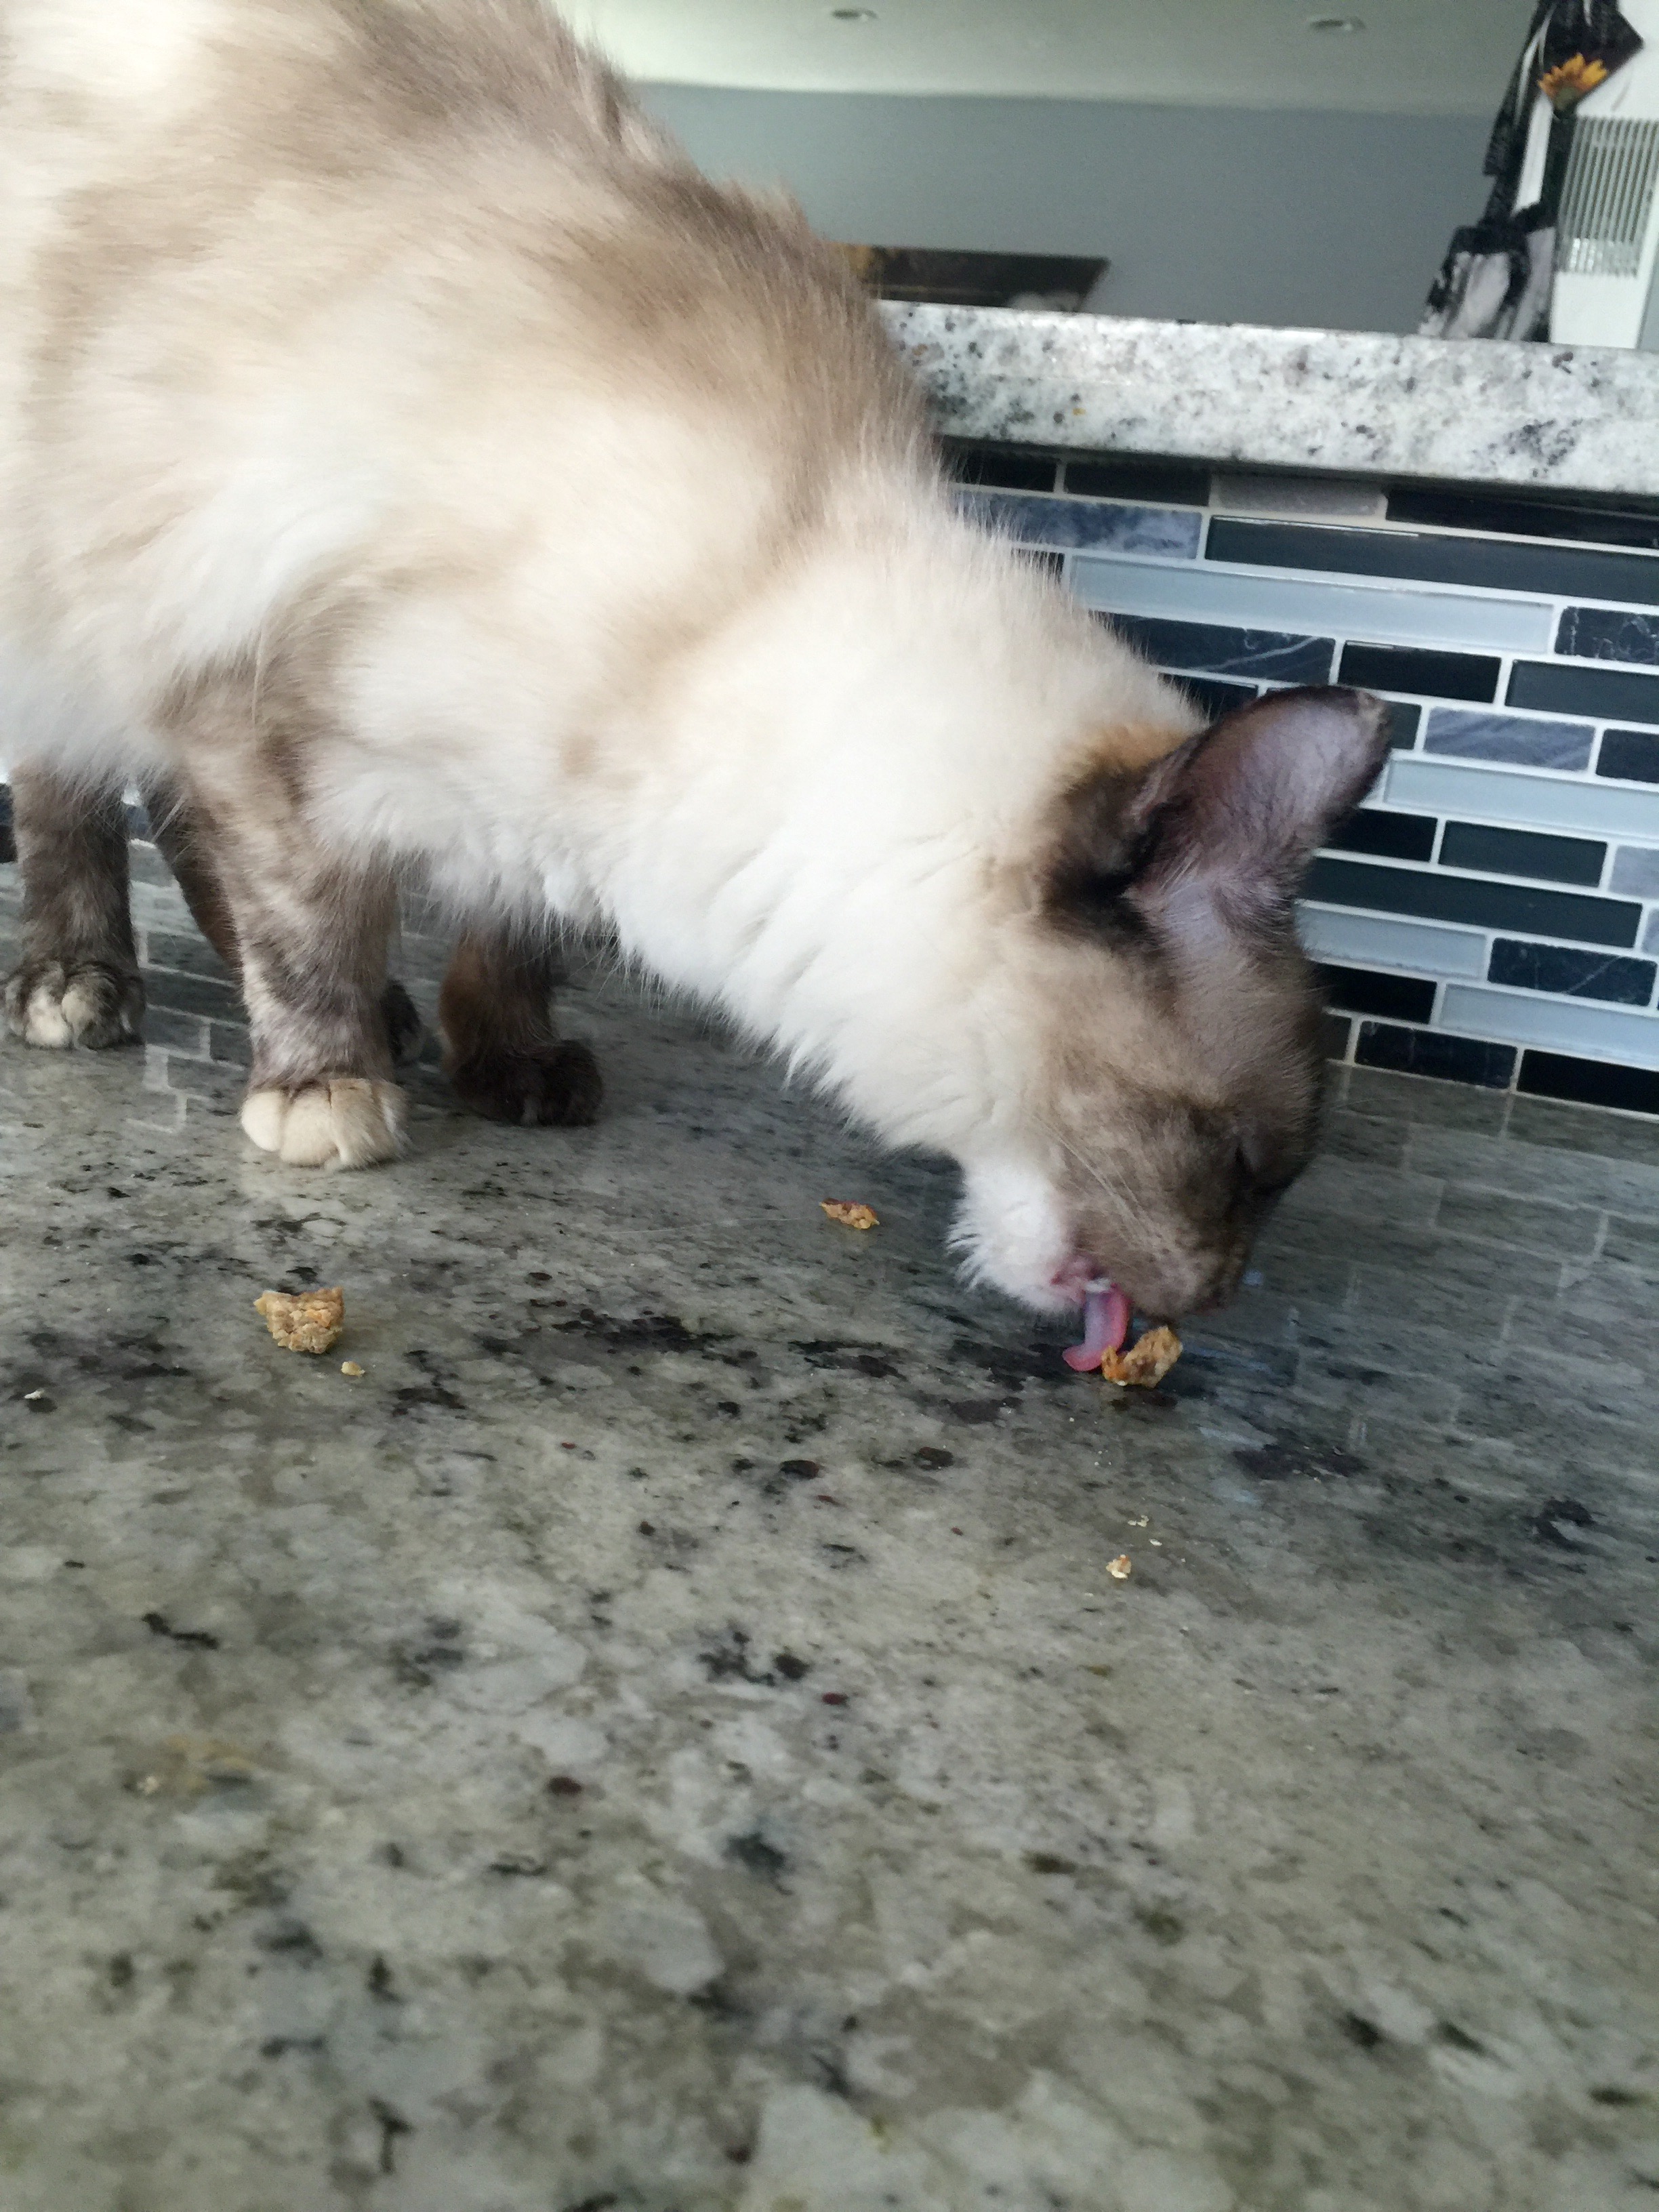 Penelope likes the homemade cat treats!